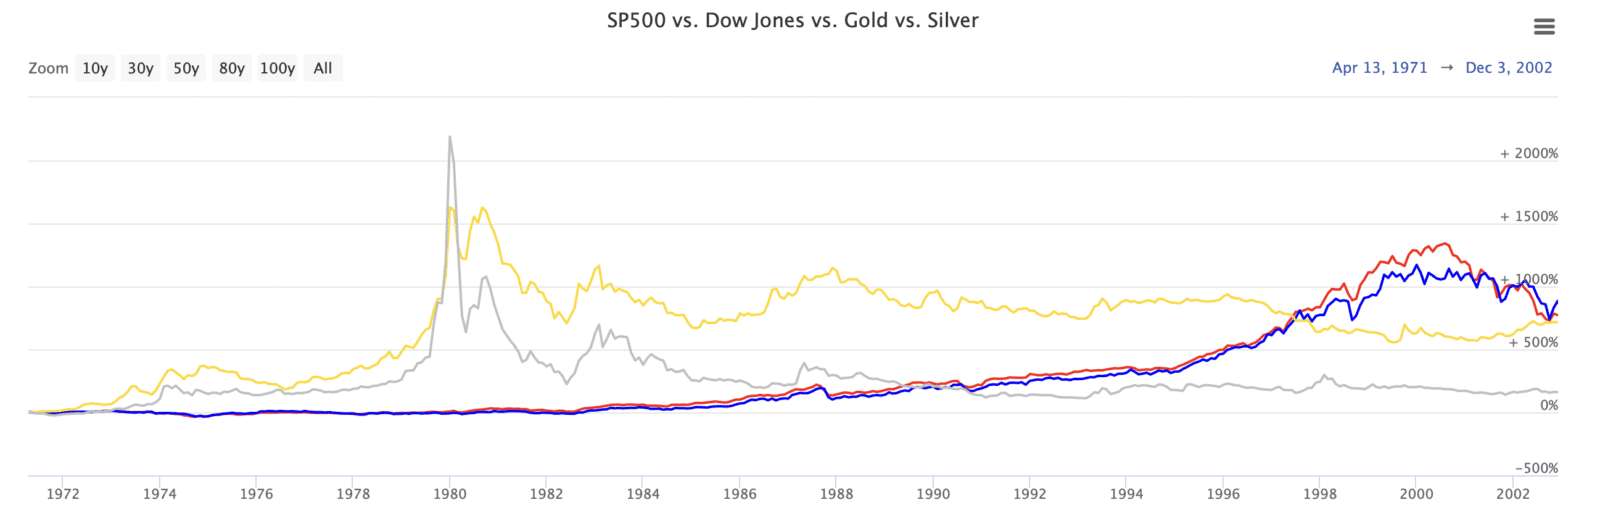 doe niet haalbaar intelligentie Aandelen versus goud en zilver (sinds 1900) - Goudzaken